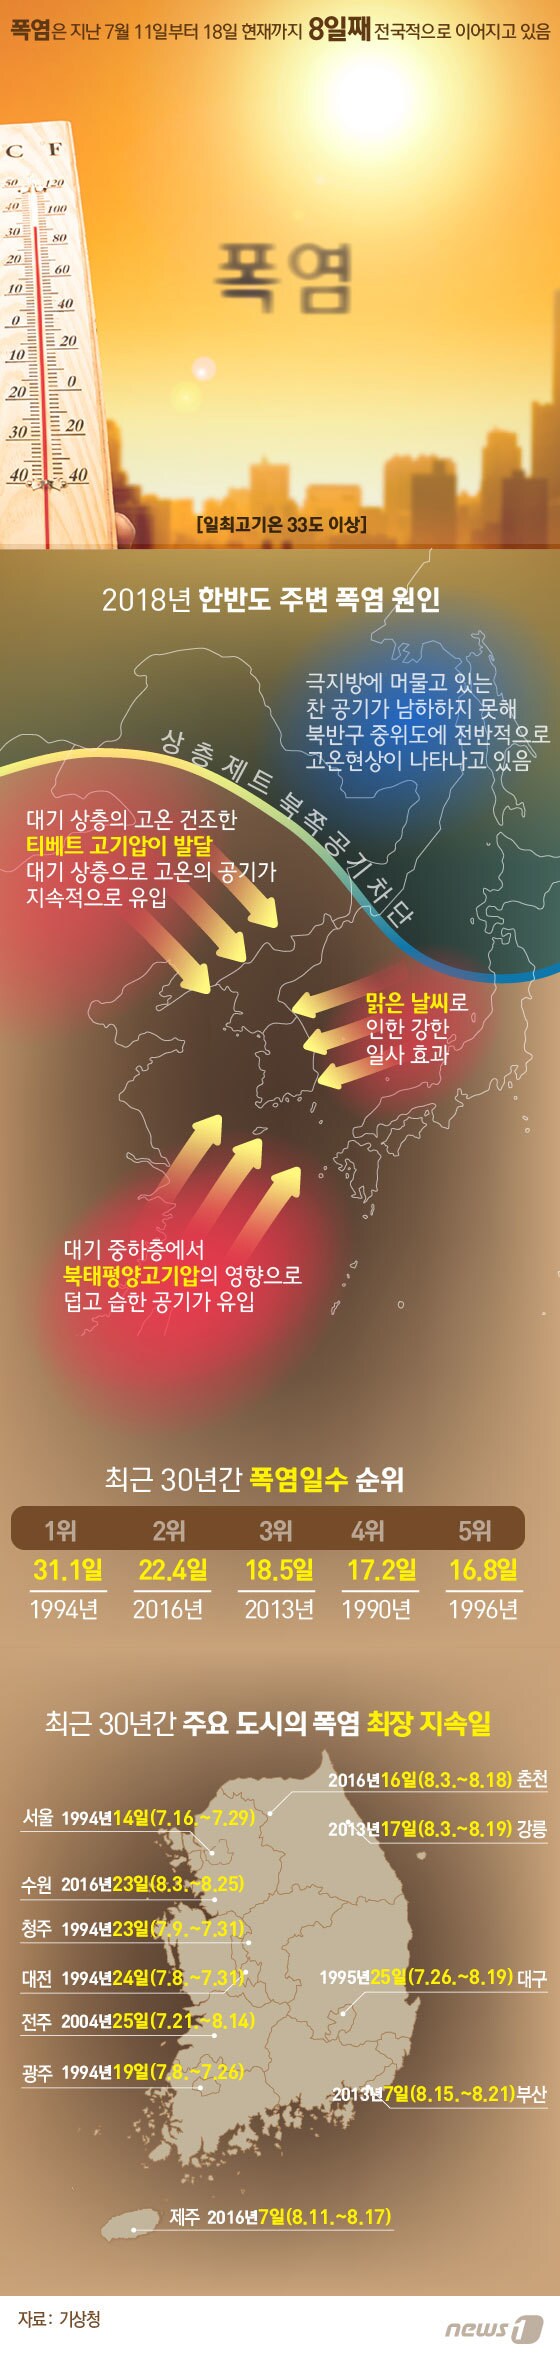 [그래픽뉴스] 한반도 주변 폭염 원인